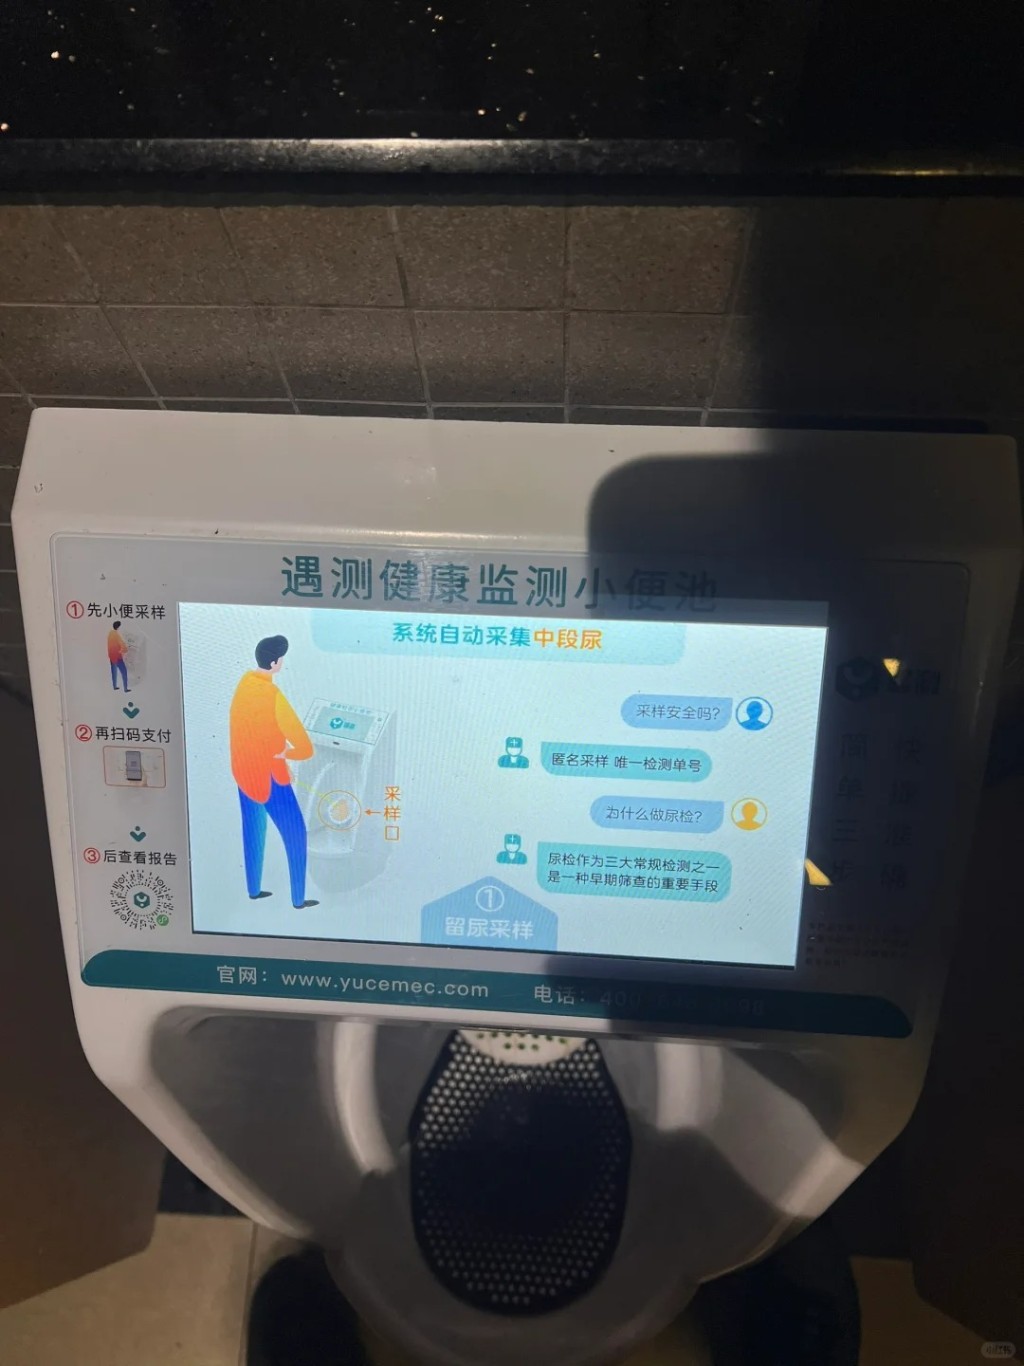 內地許多公共場所的男洗手間也有裝設類似的「智能尿兜」。